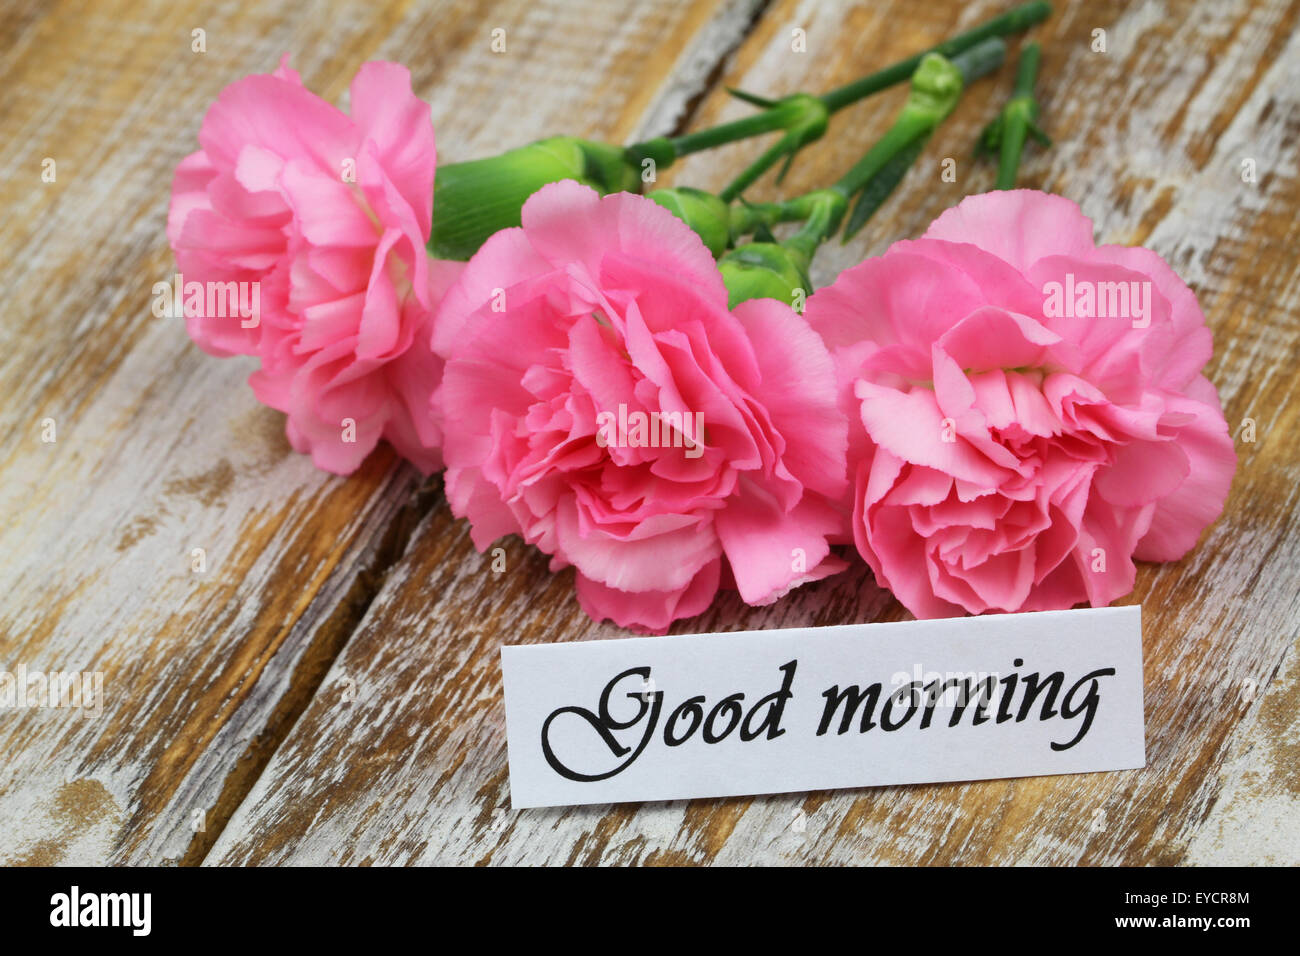 Buona mattina scheda con i garofani rosa su legno rustico Foto Stock